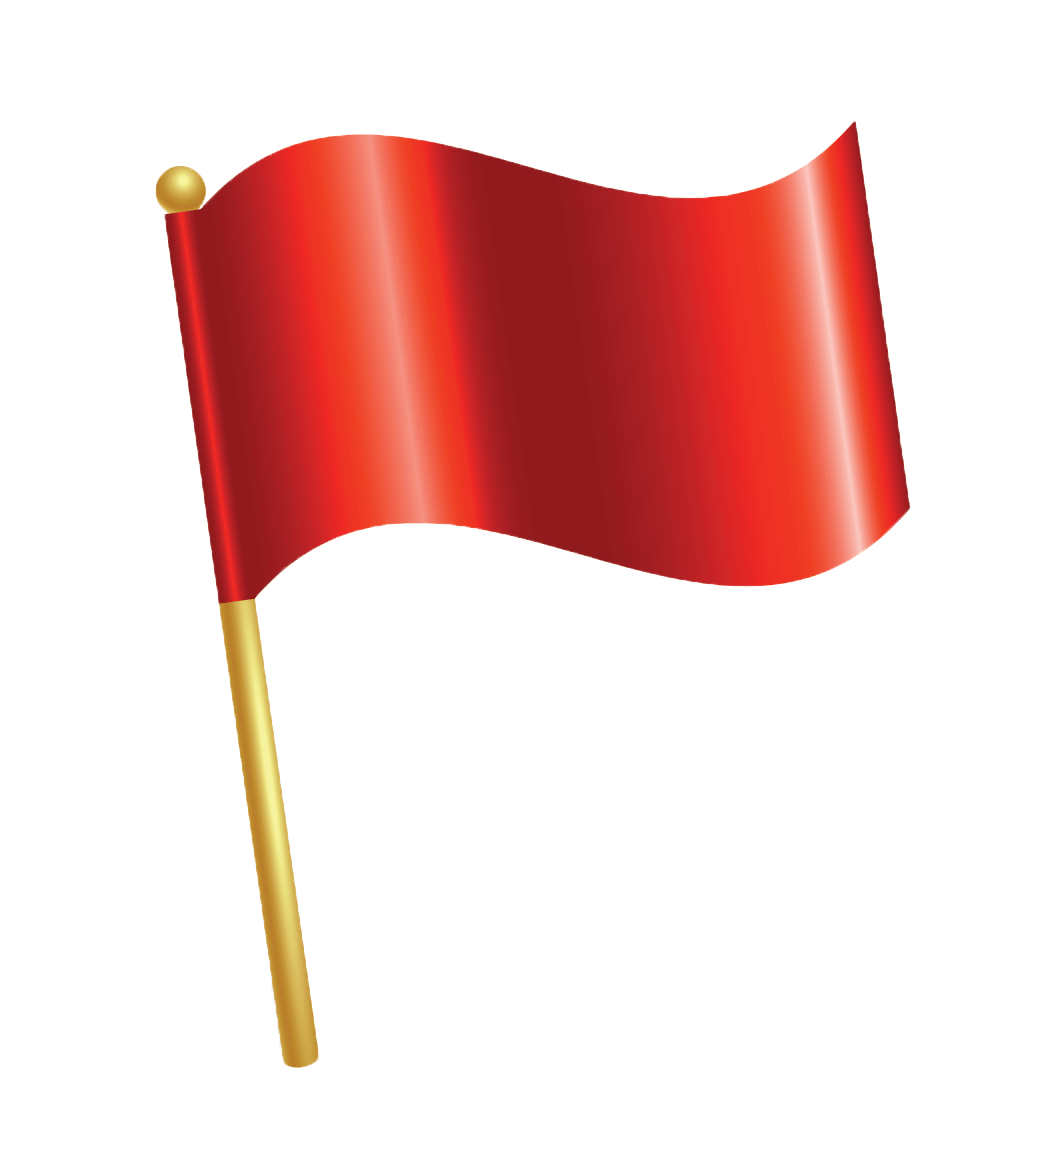 Red Pin Flag over white floor